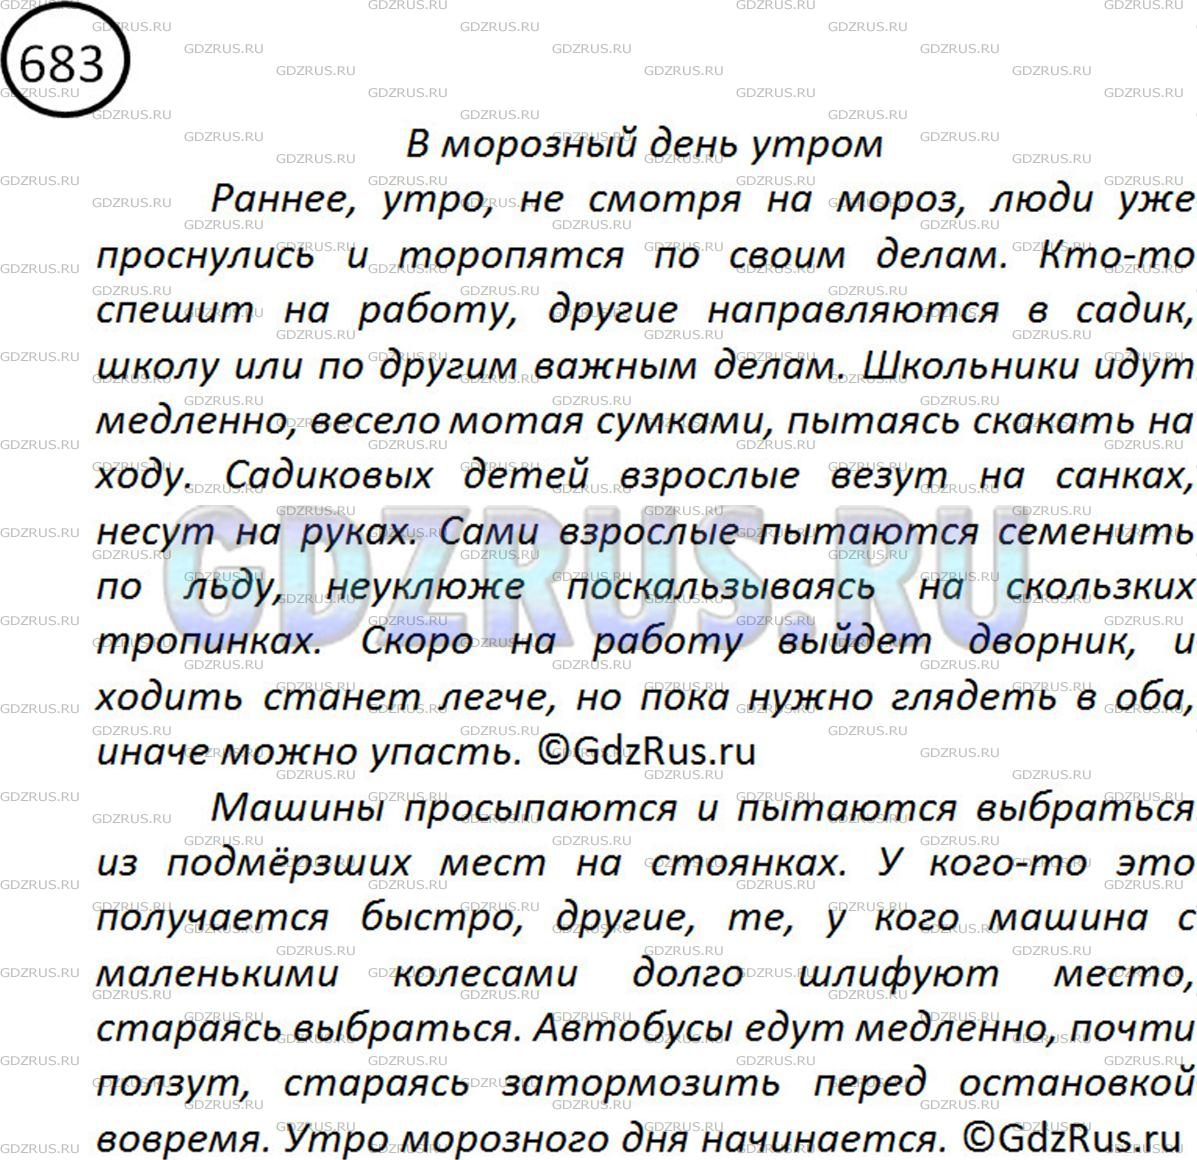 Фото решения 2: ГДЗ по Русскому языку 5 класса: Ладыженская Упр. 683